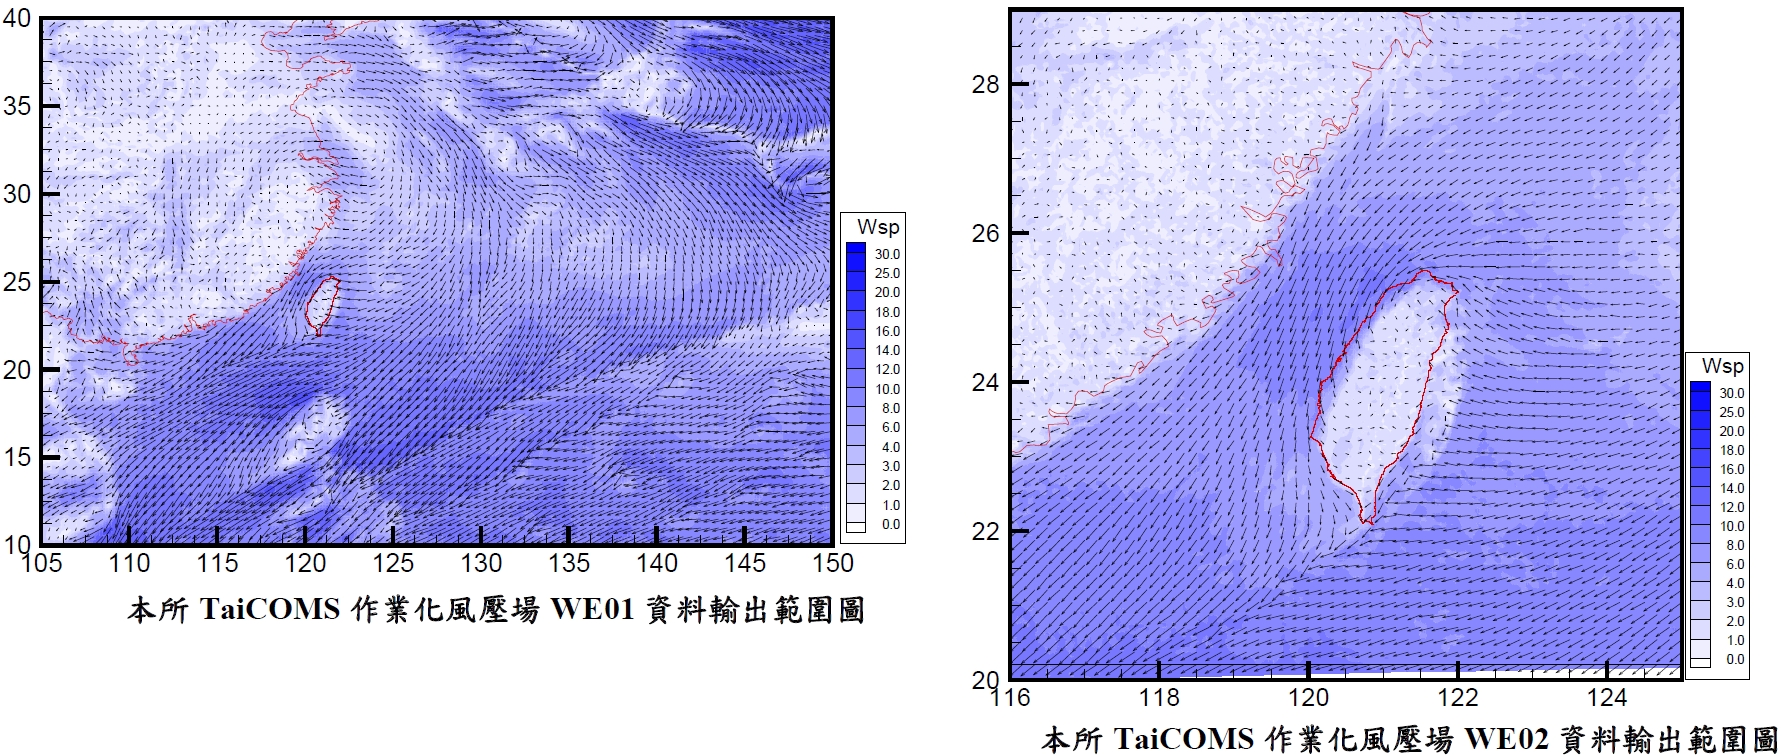 臺灣近岸海象預報系統整體架構圖